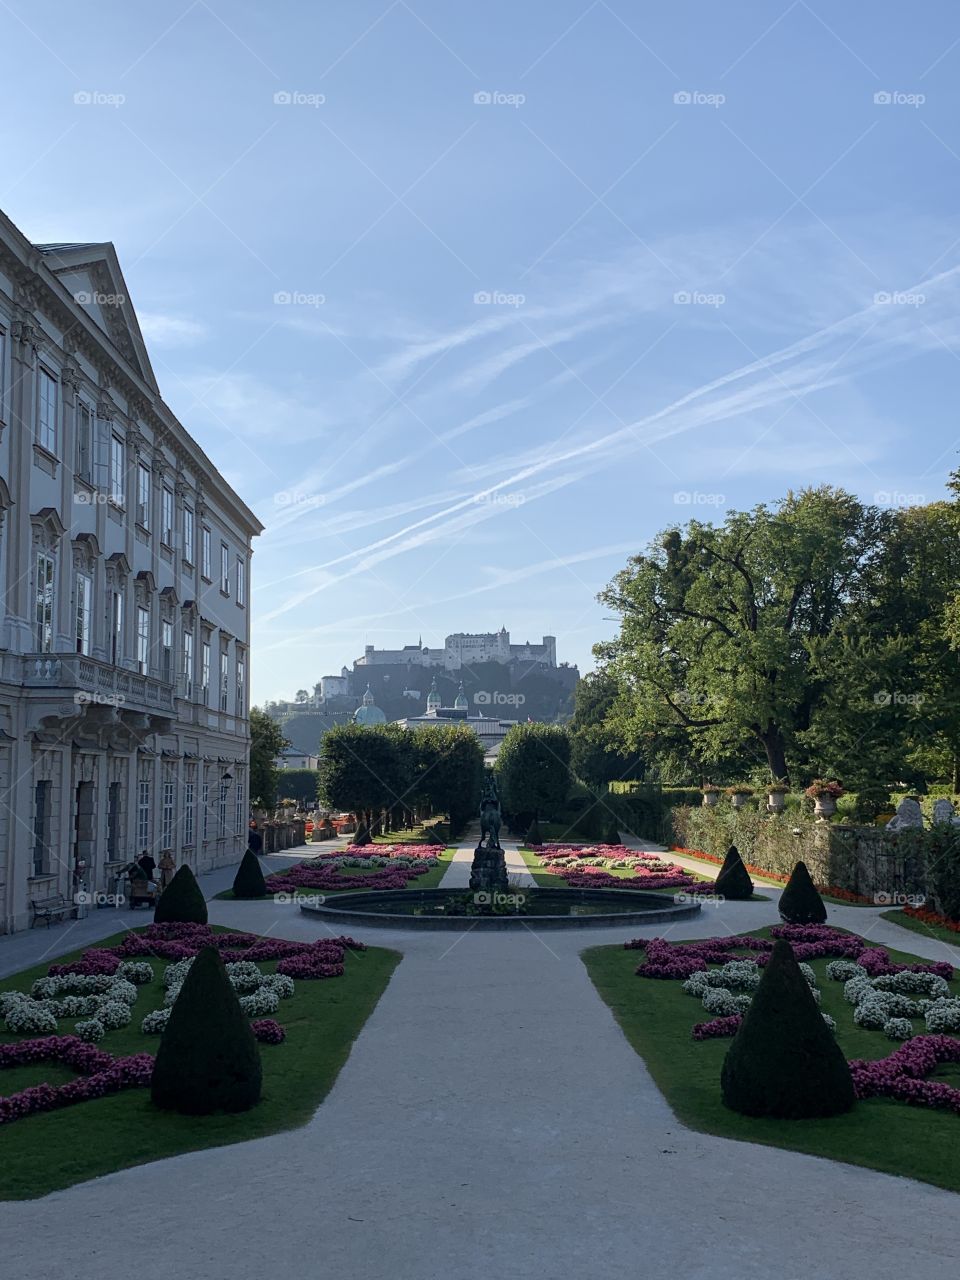 Salzburg mirabelle gardens